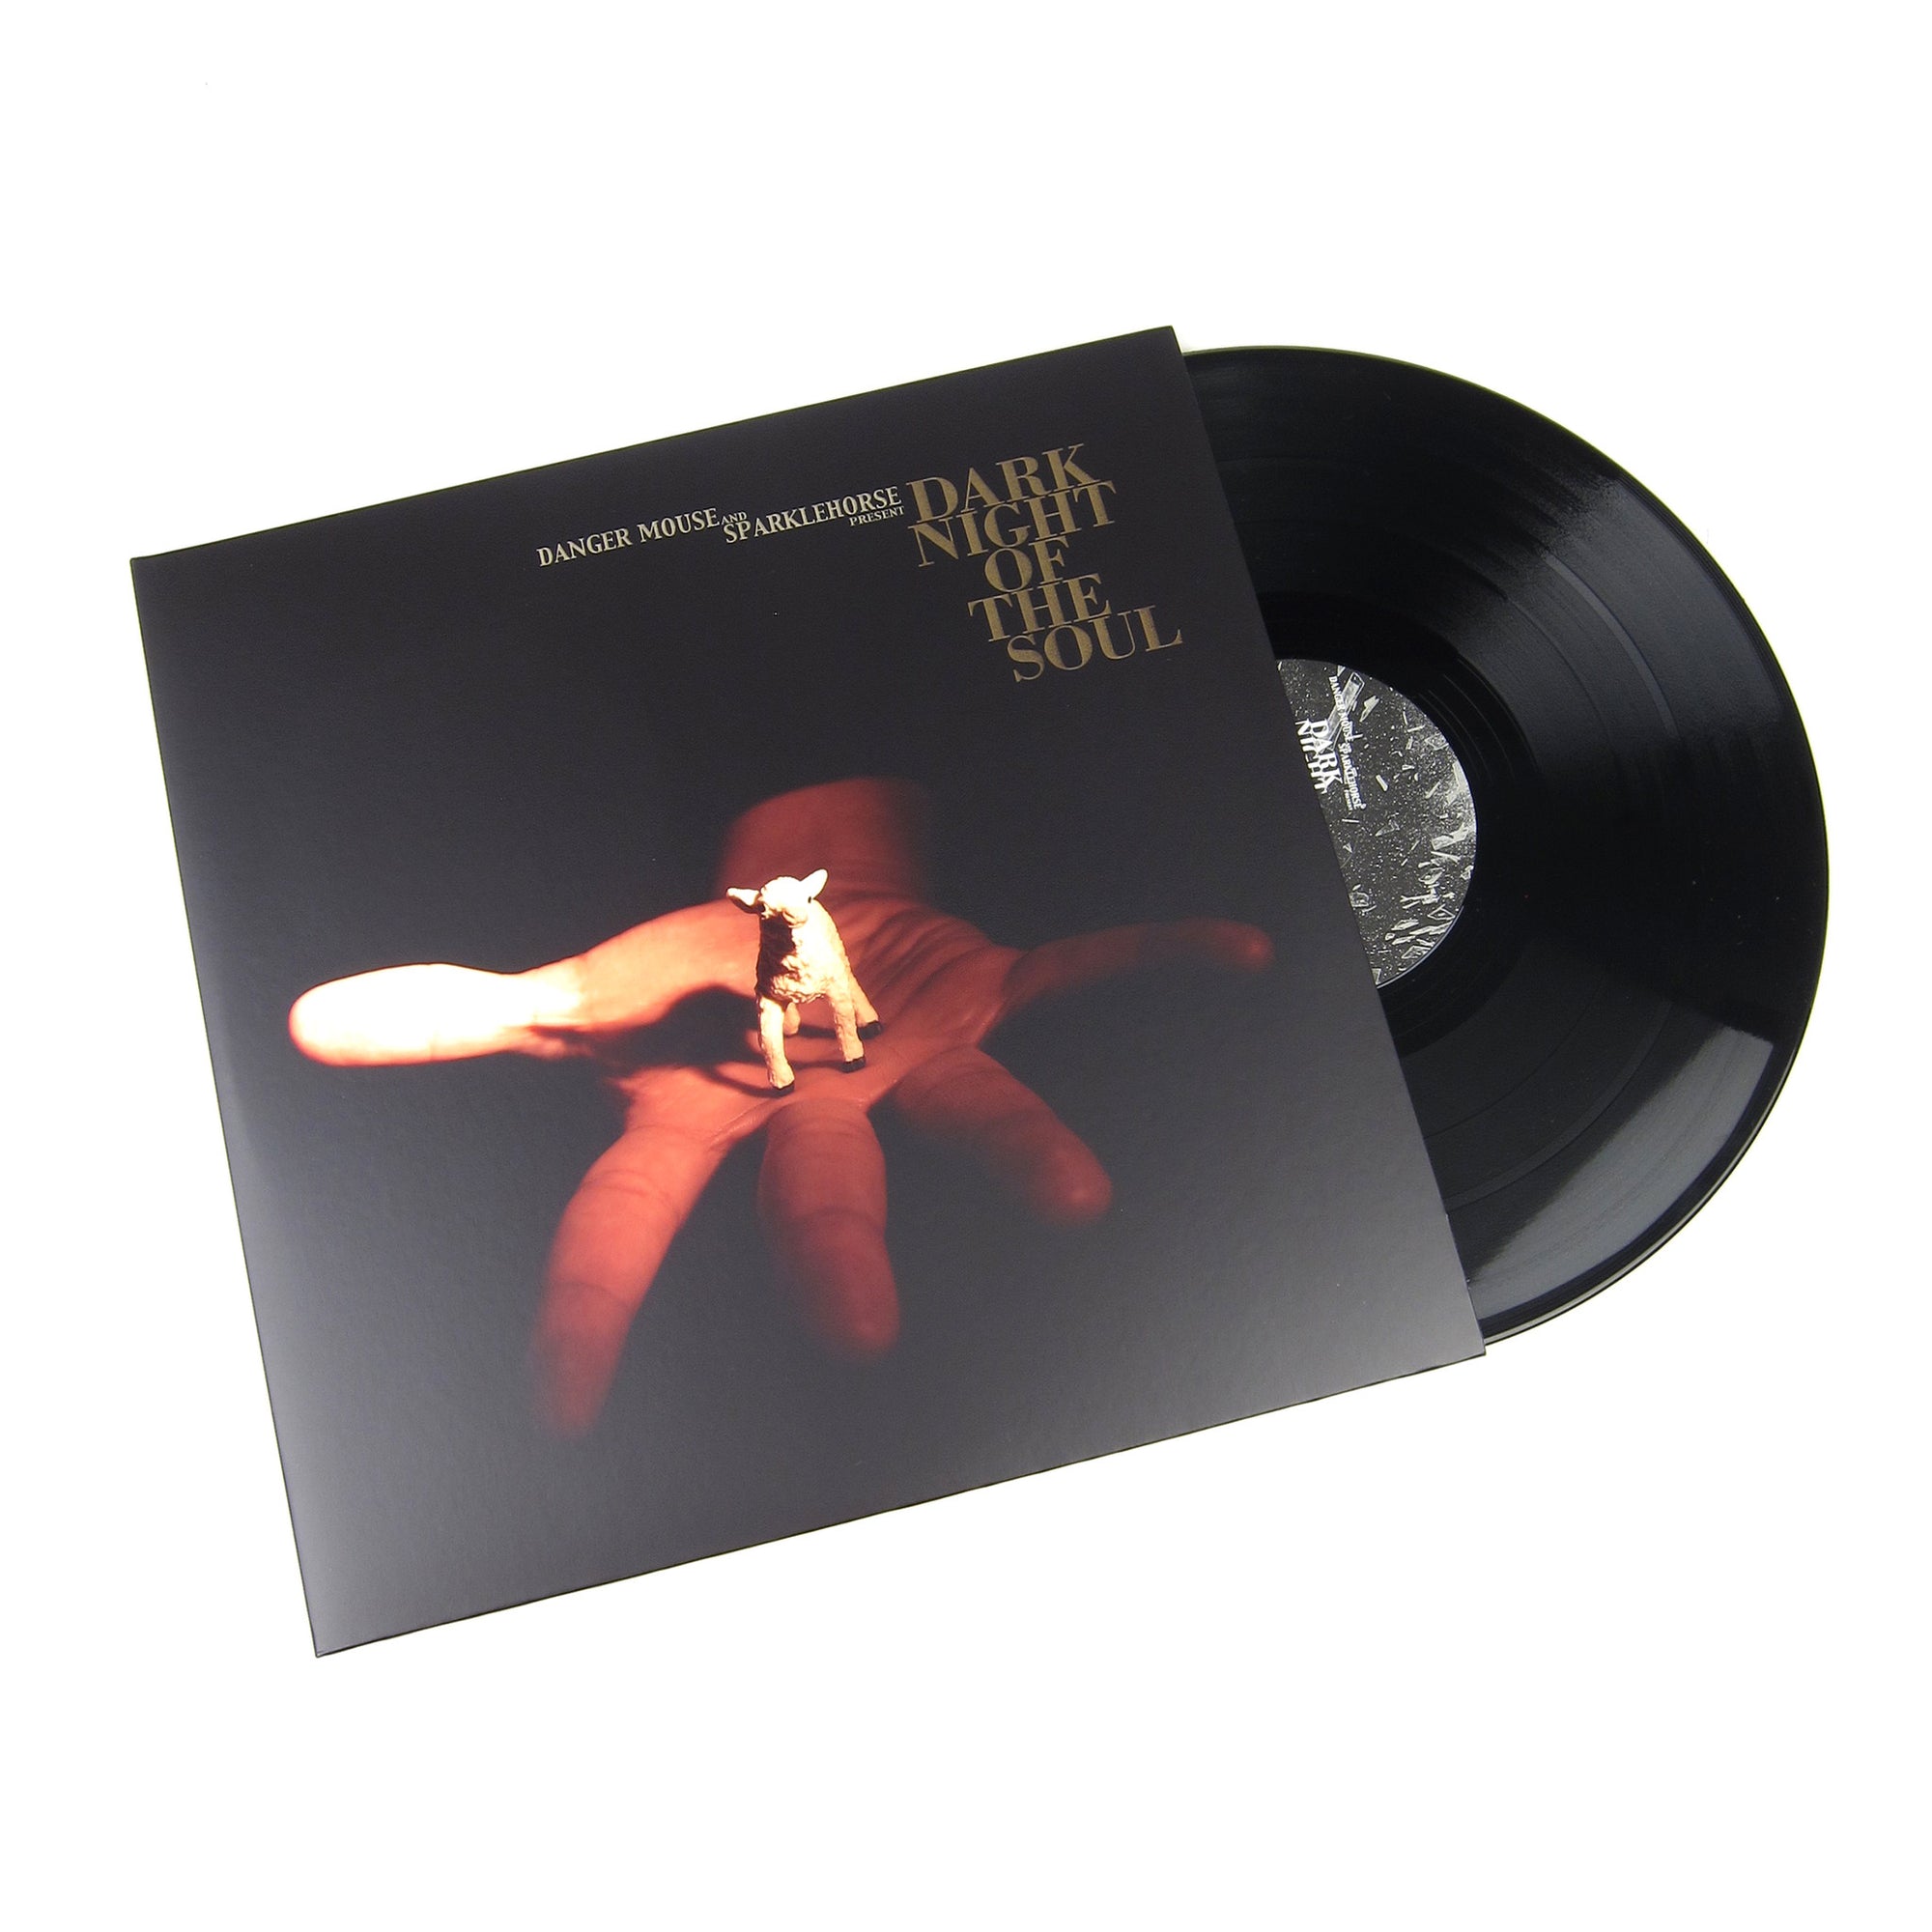 Danger Mouse & Sparklehorse: Dark Night Of The Soul (180g) Vinyl 2LP ...